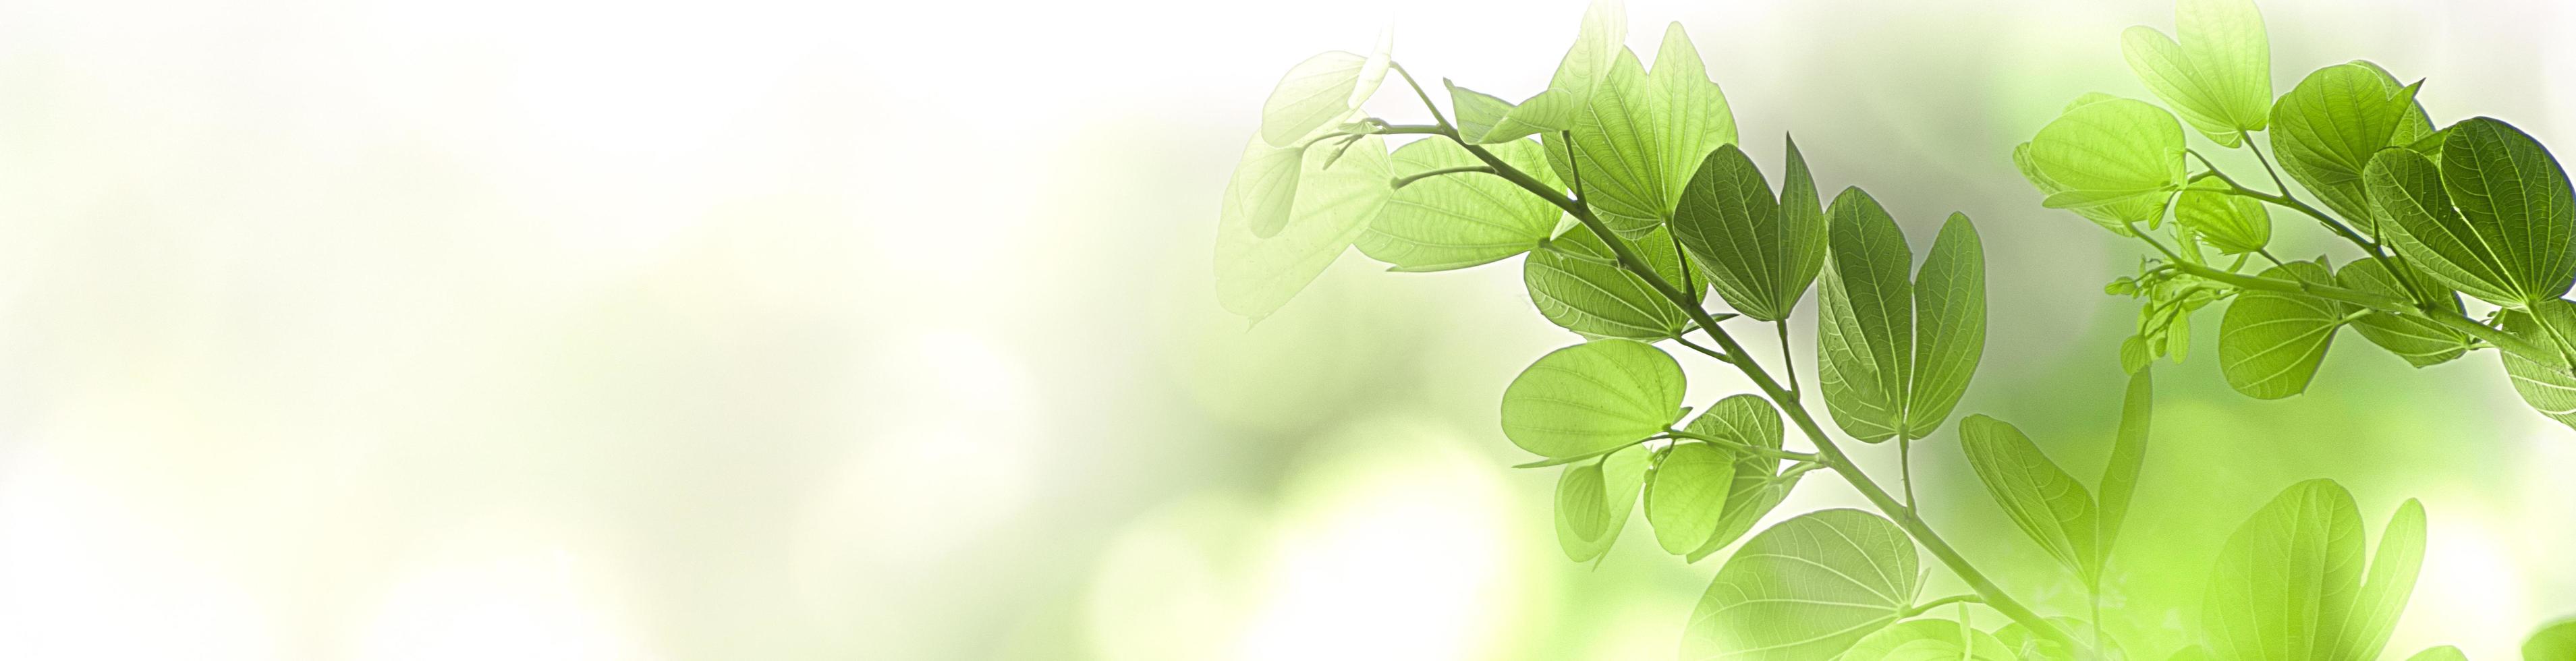 folha fresca da árvore verde da natureza no fundo de luz solar bokeh suave turva bonito com espaço de cópia gratuita, página de capa de primavera, verão ou meio ambiente, modelo, banner da web e cabeçalho. foto